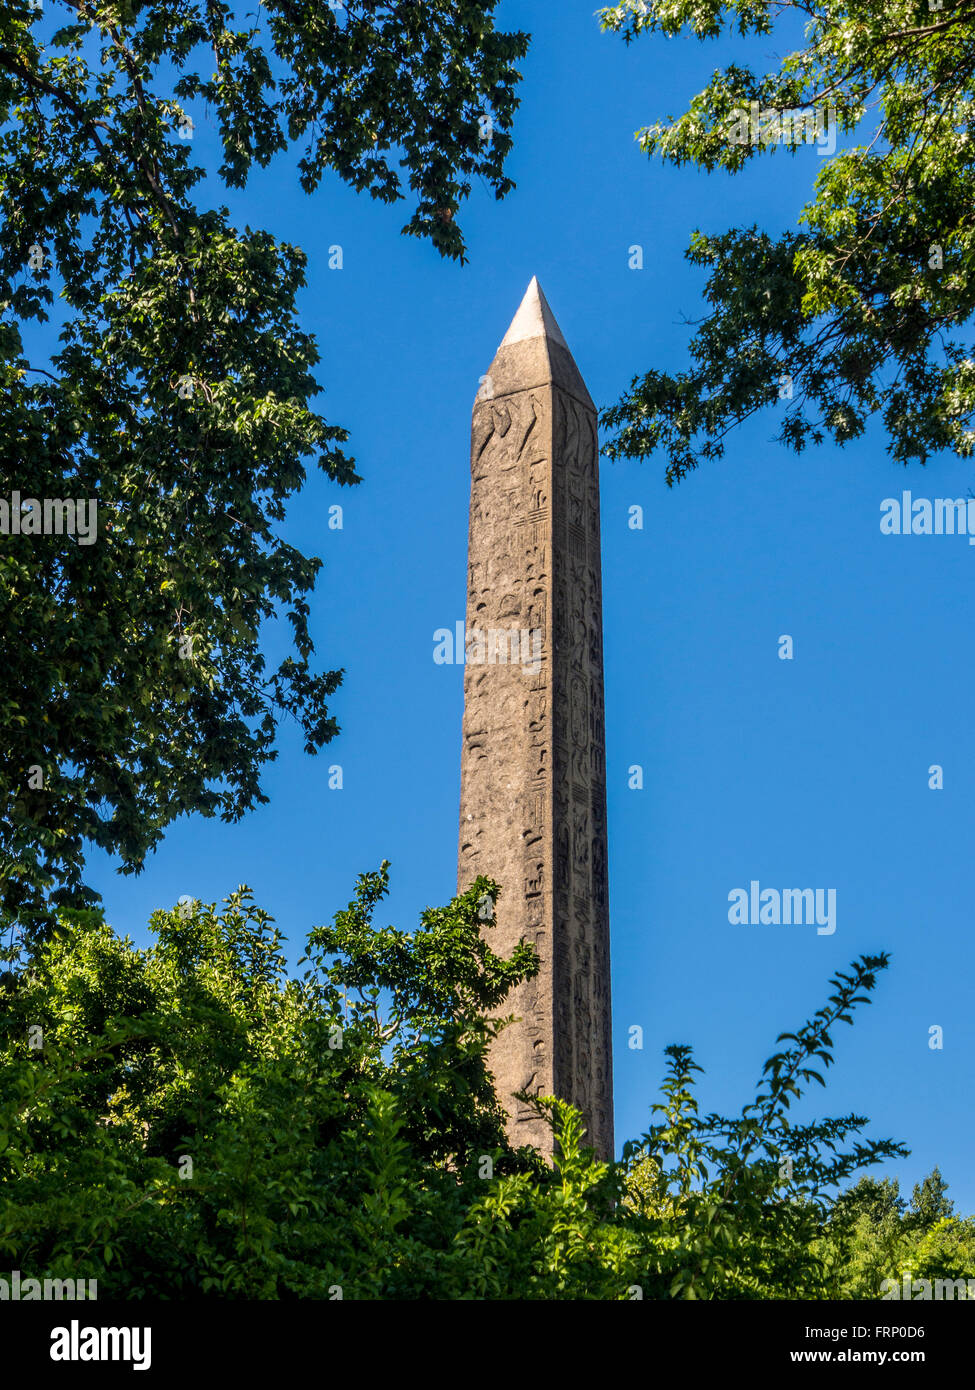 El Obelisco (aguja de Cleopatra), el objeto artificial más antiguo de Central Park, y el monumento al aire libre más antiguo de Nueva York. Foto de stock